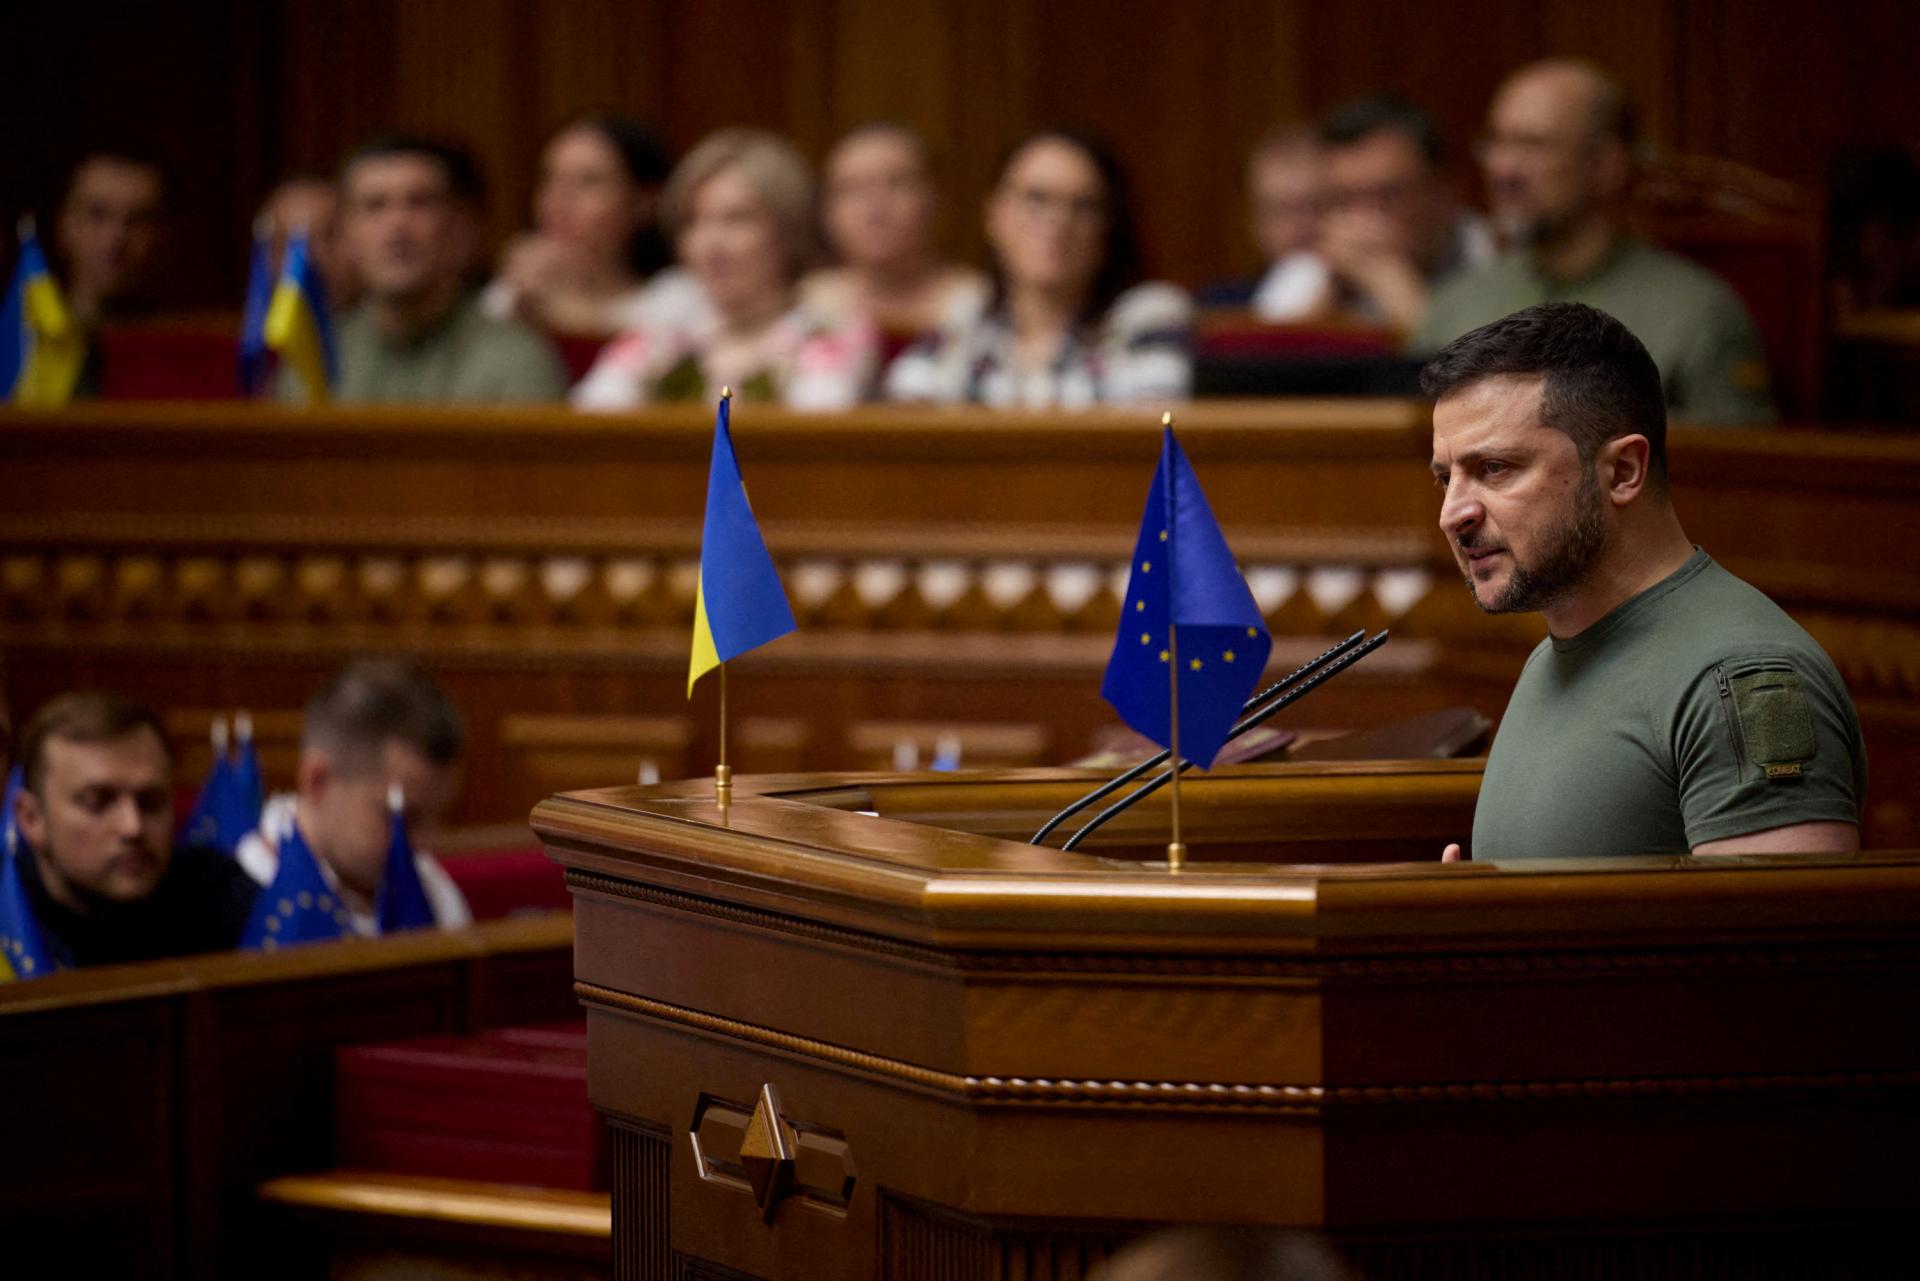 Ukrajinský parlament predĺžil stanné právo a mobilizáciu o ďalších 90 dní, muži nemôžu odísť z krajiny